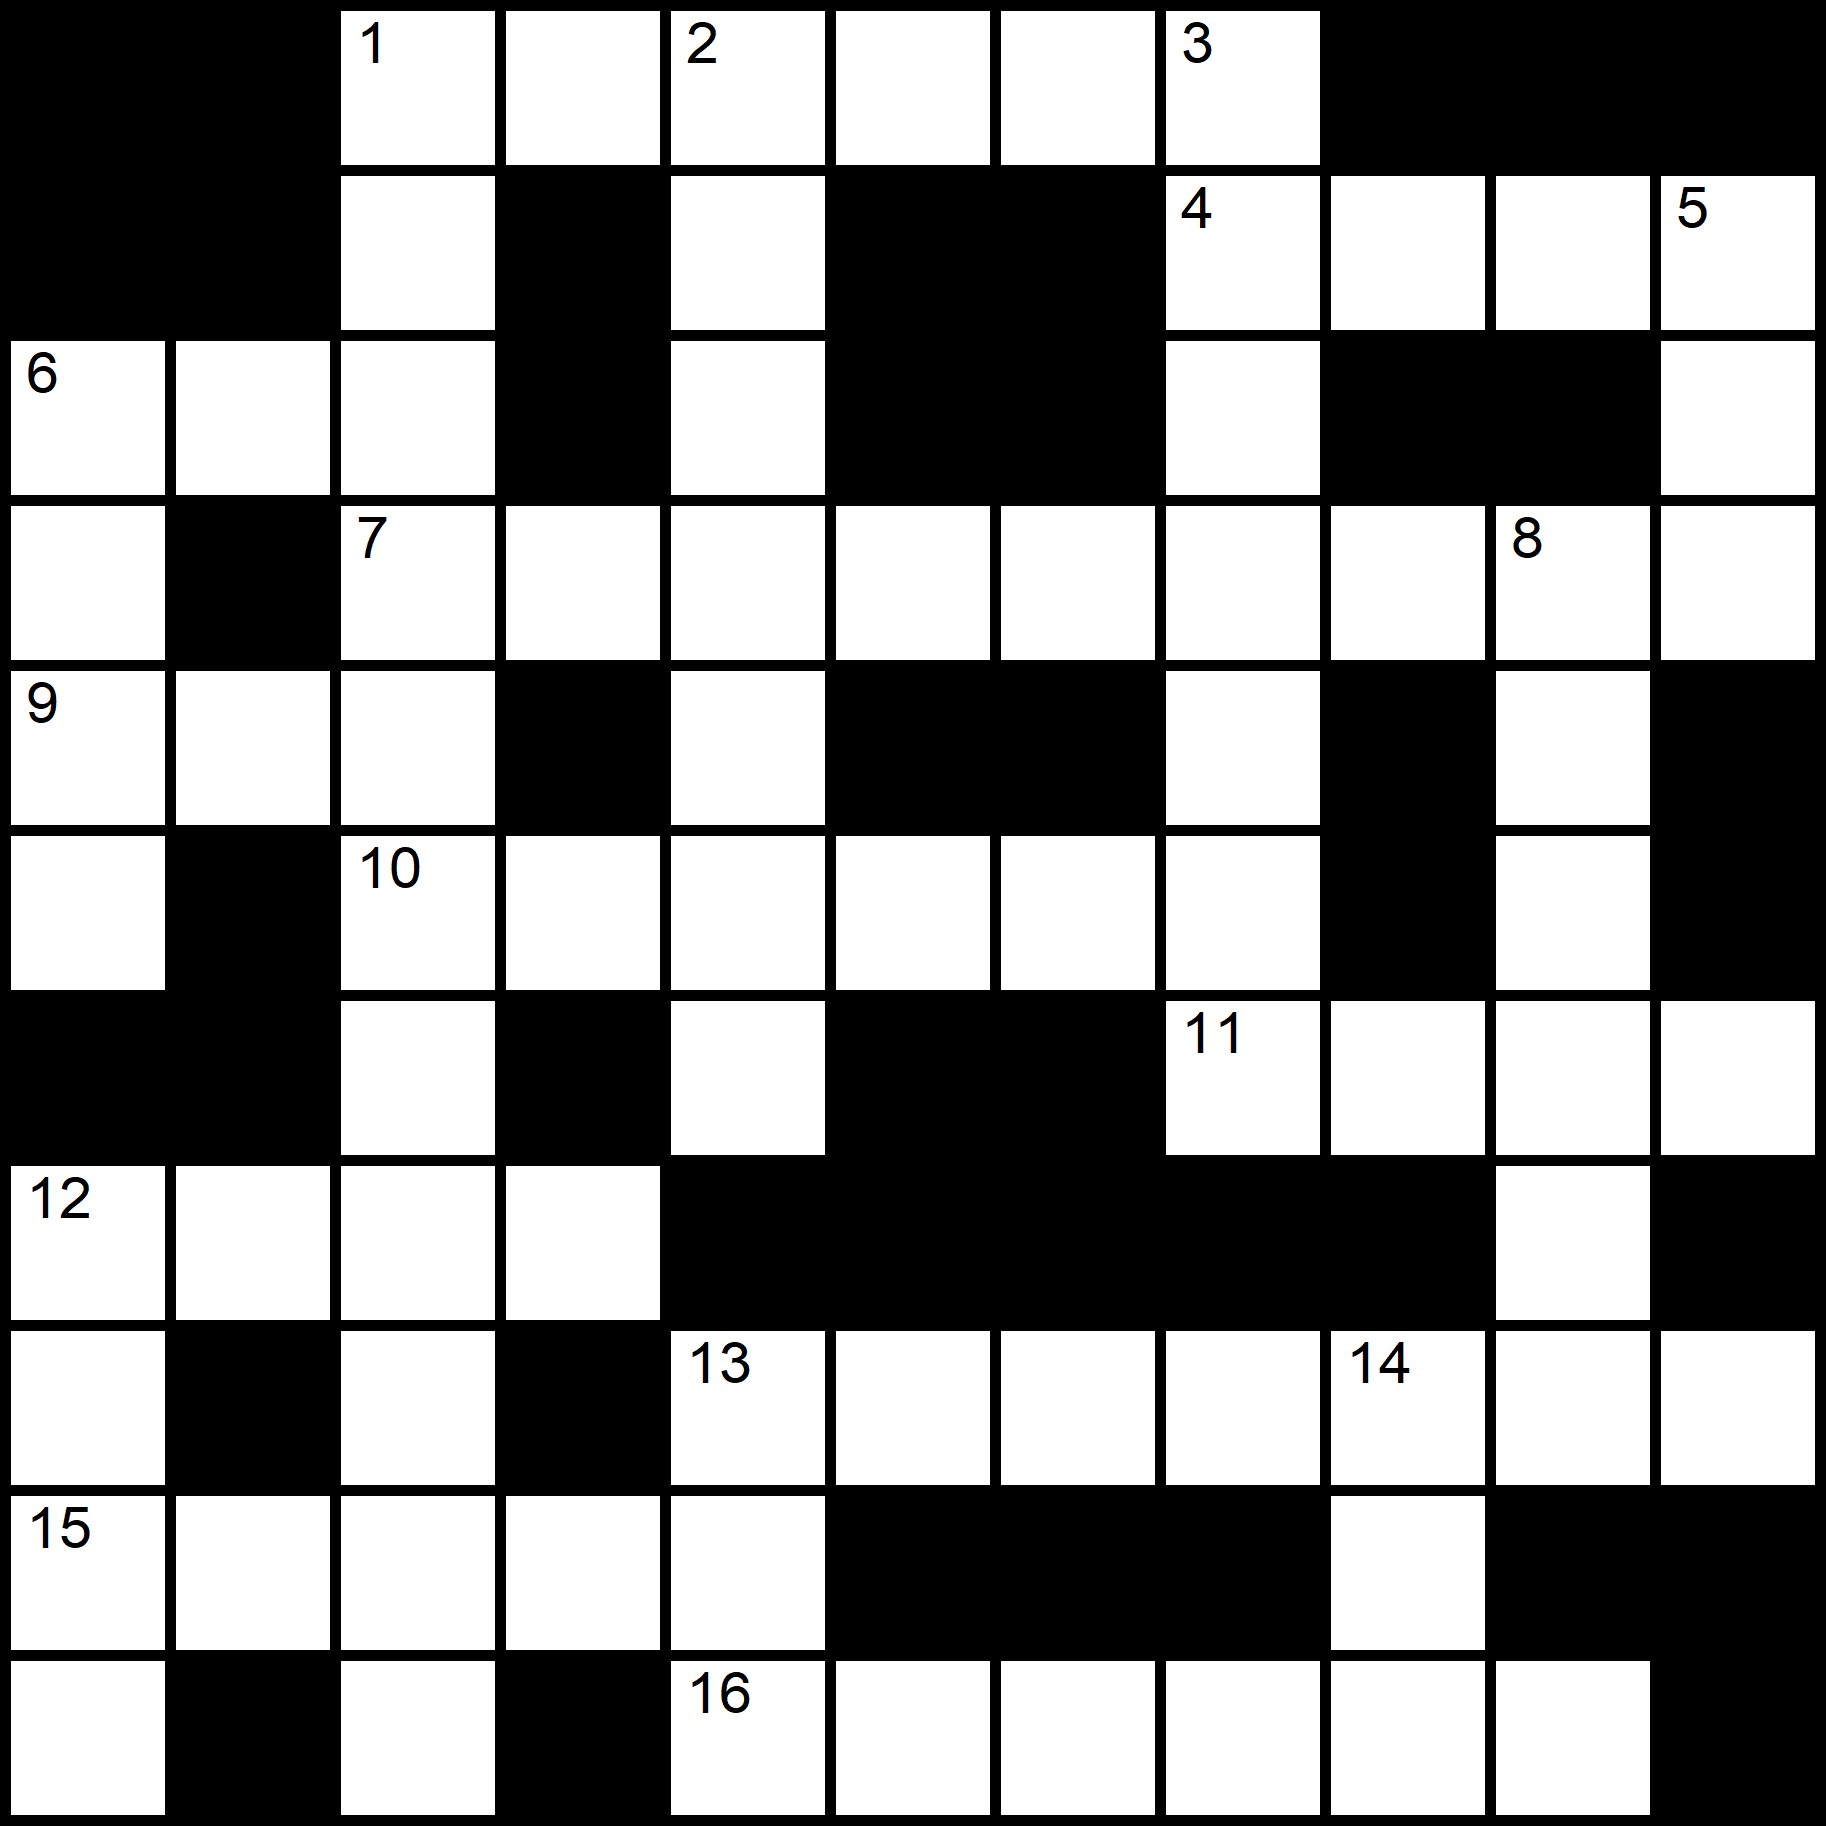 Easy Crosswords -
Placidus Flora - Crossword number eleven